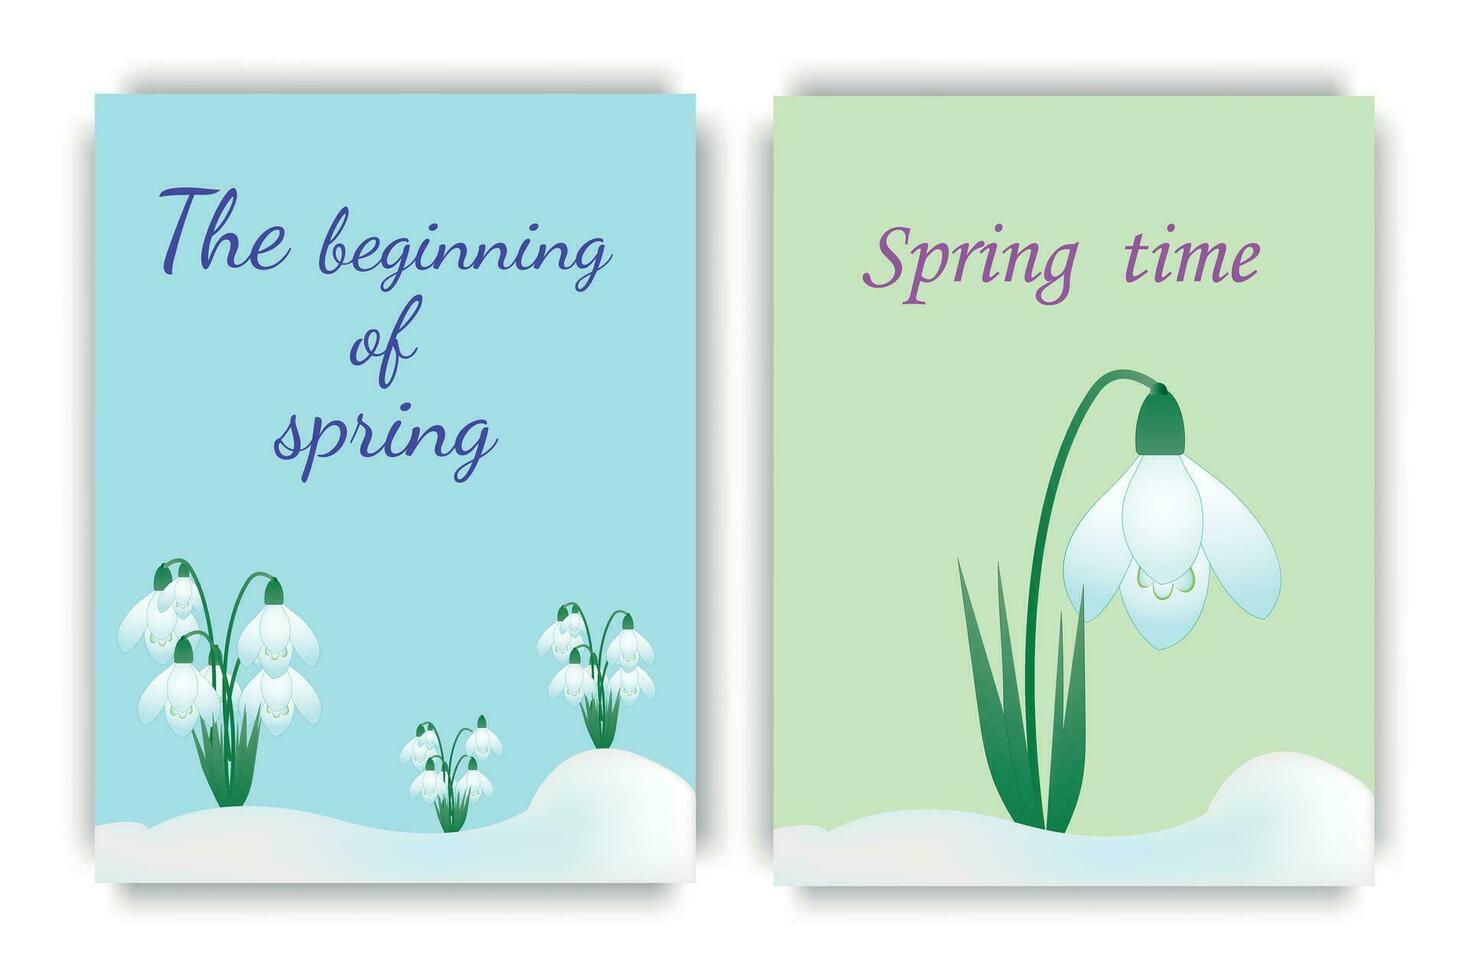 affiche avec perce-neige, décrit le début de printemps, chaleur et Soleil. vecteur illustration.